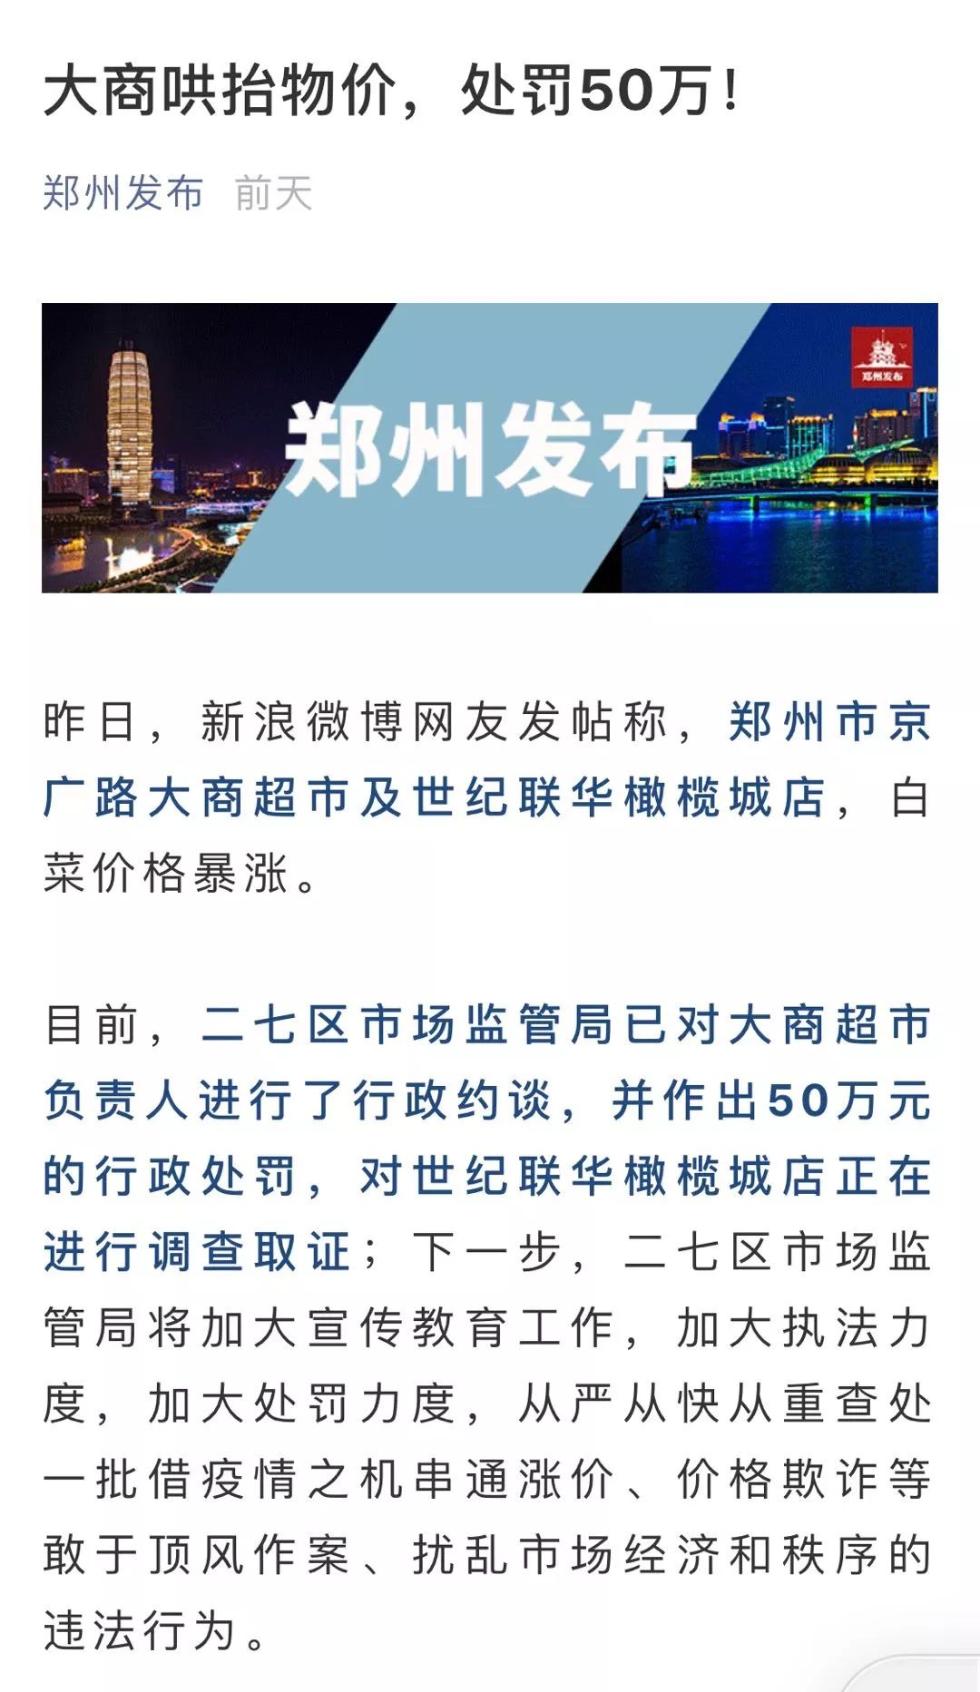 郑州发布微信公号。截图